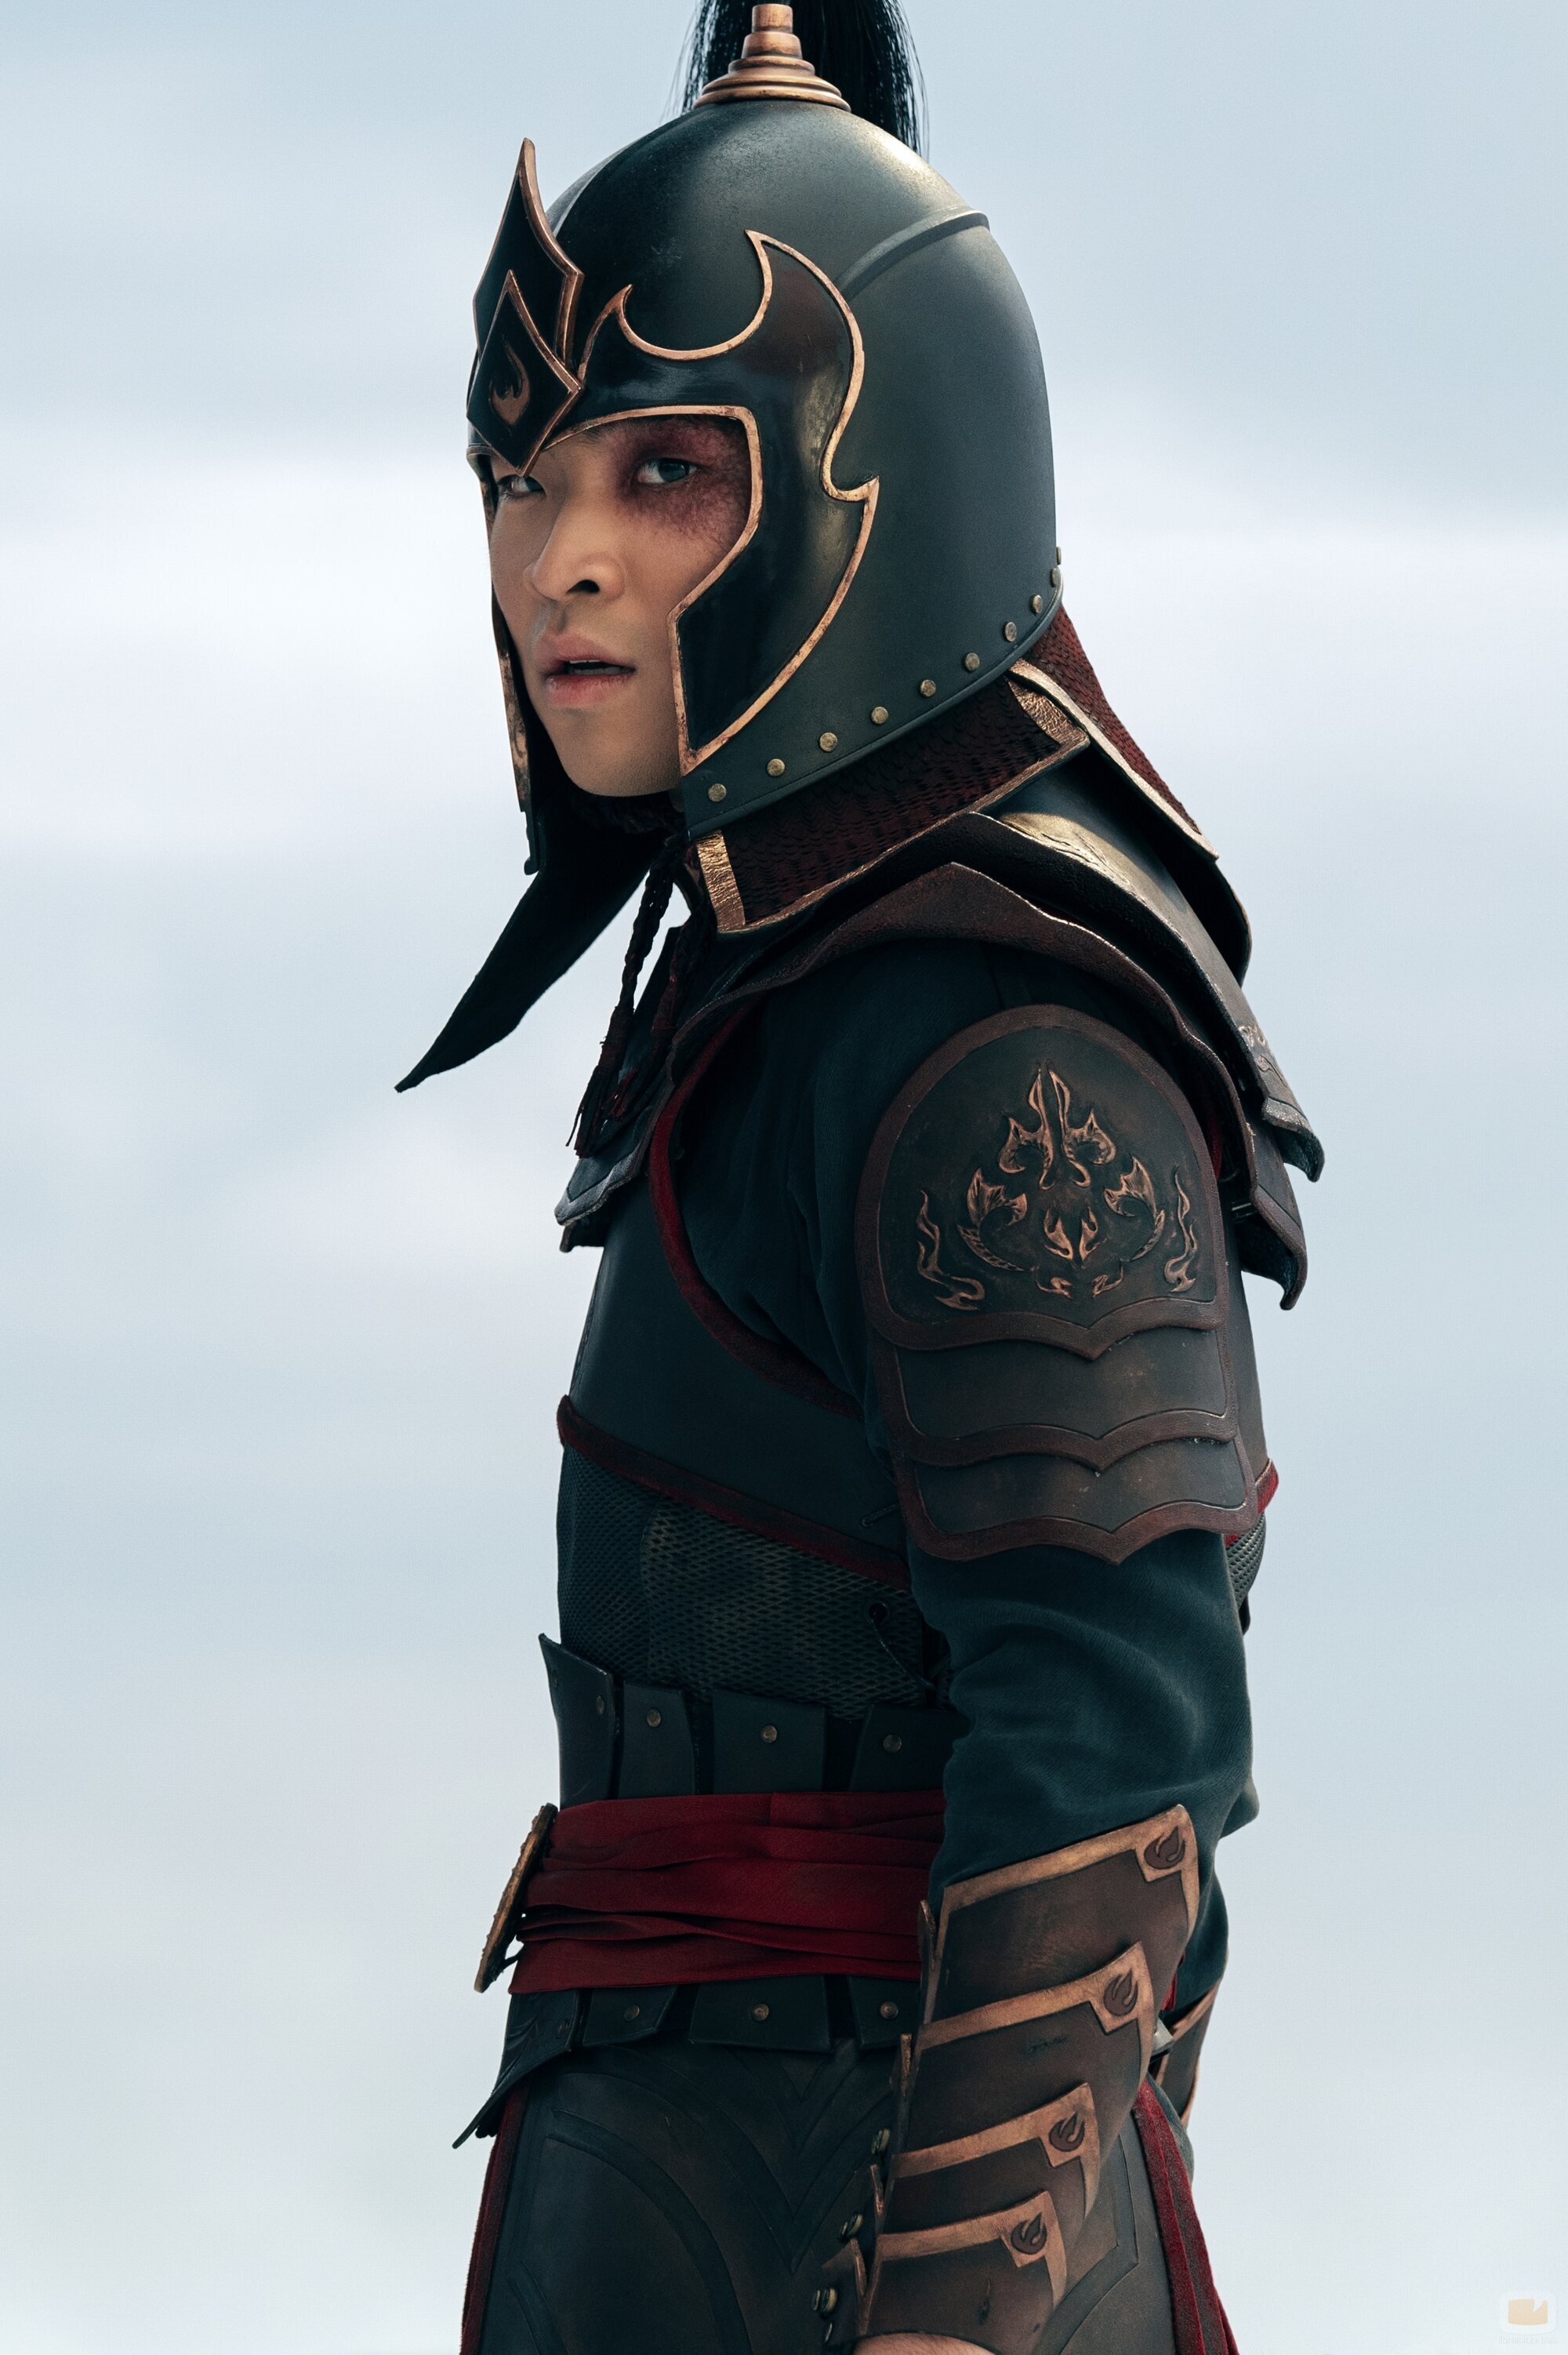 Dallas Liu es Zuko en 'Avatar: La leyenda de Aang'